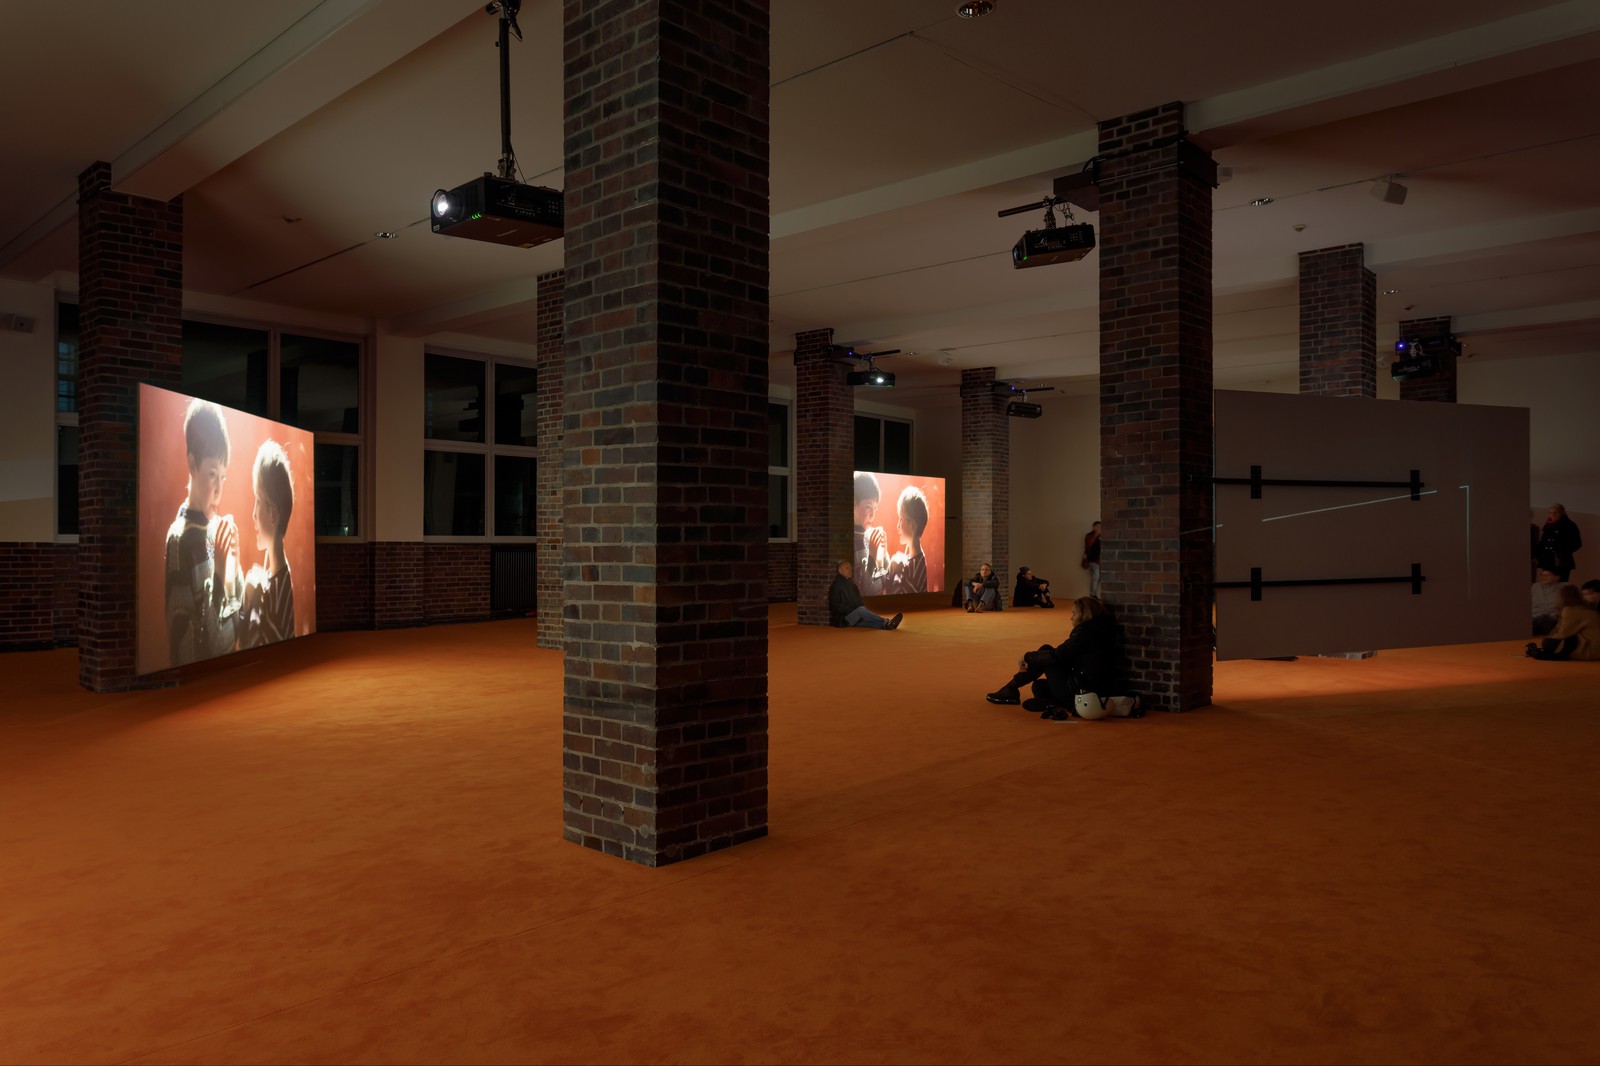 Installation view, Blood in my Milk, Museum für Moderne Kunst Frankfurt, 2019